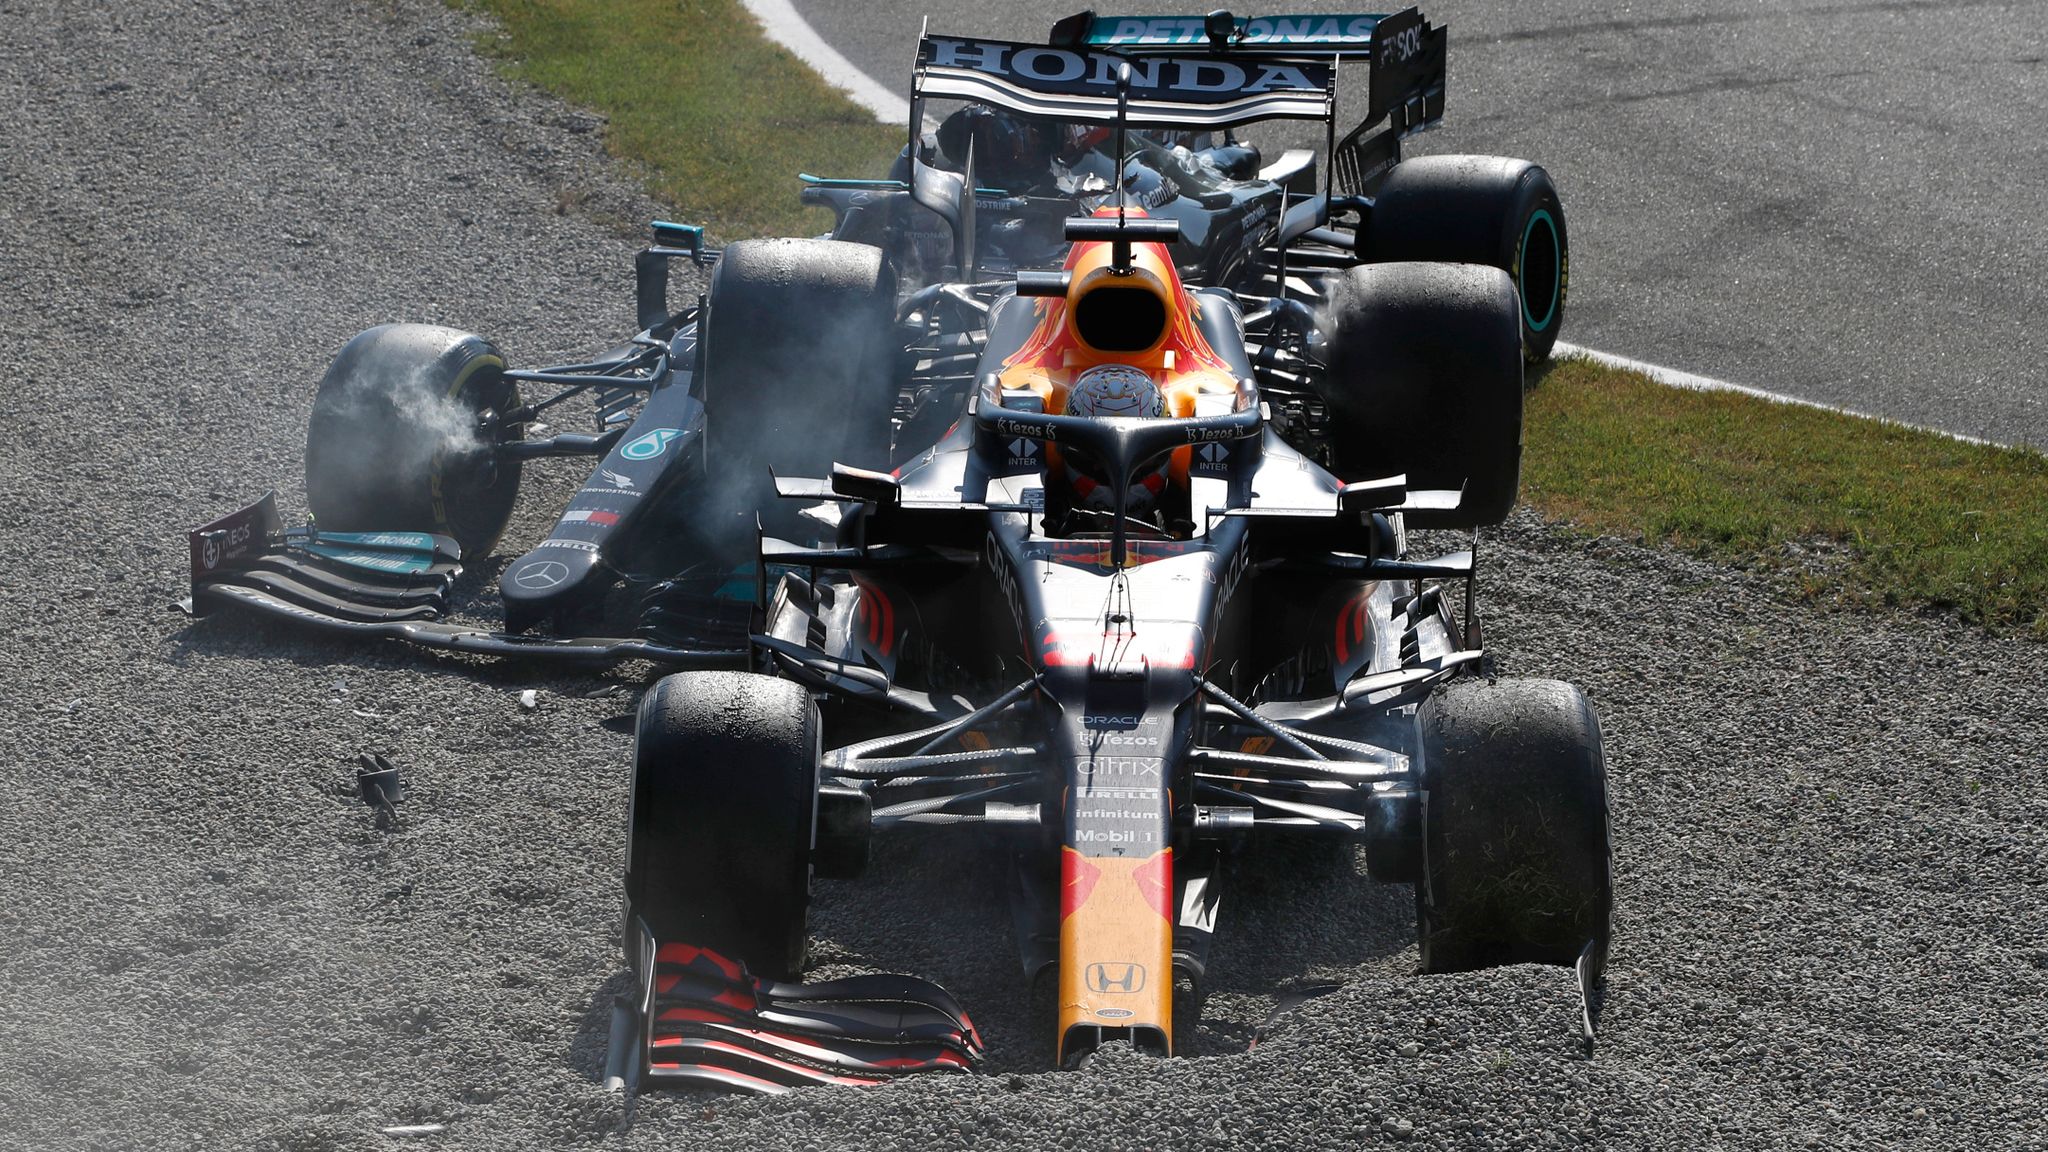 Ricciardo leads McLaren 1-2 at Monza as Hamilton, Vestappen crash